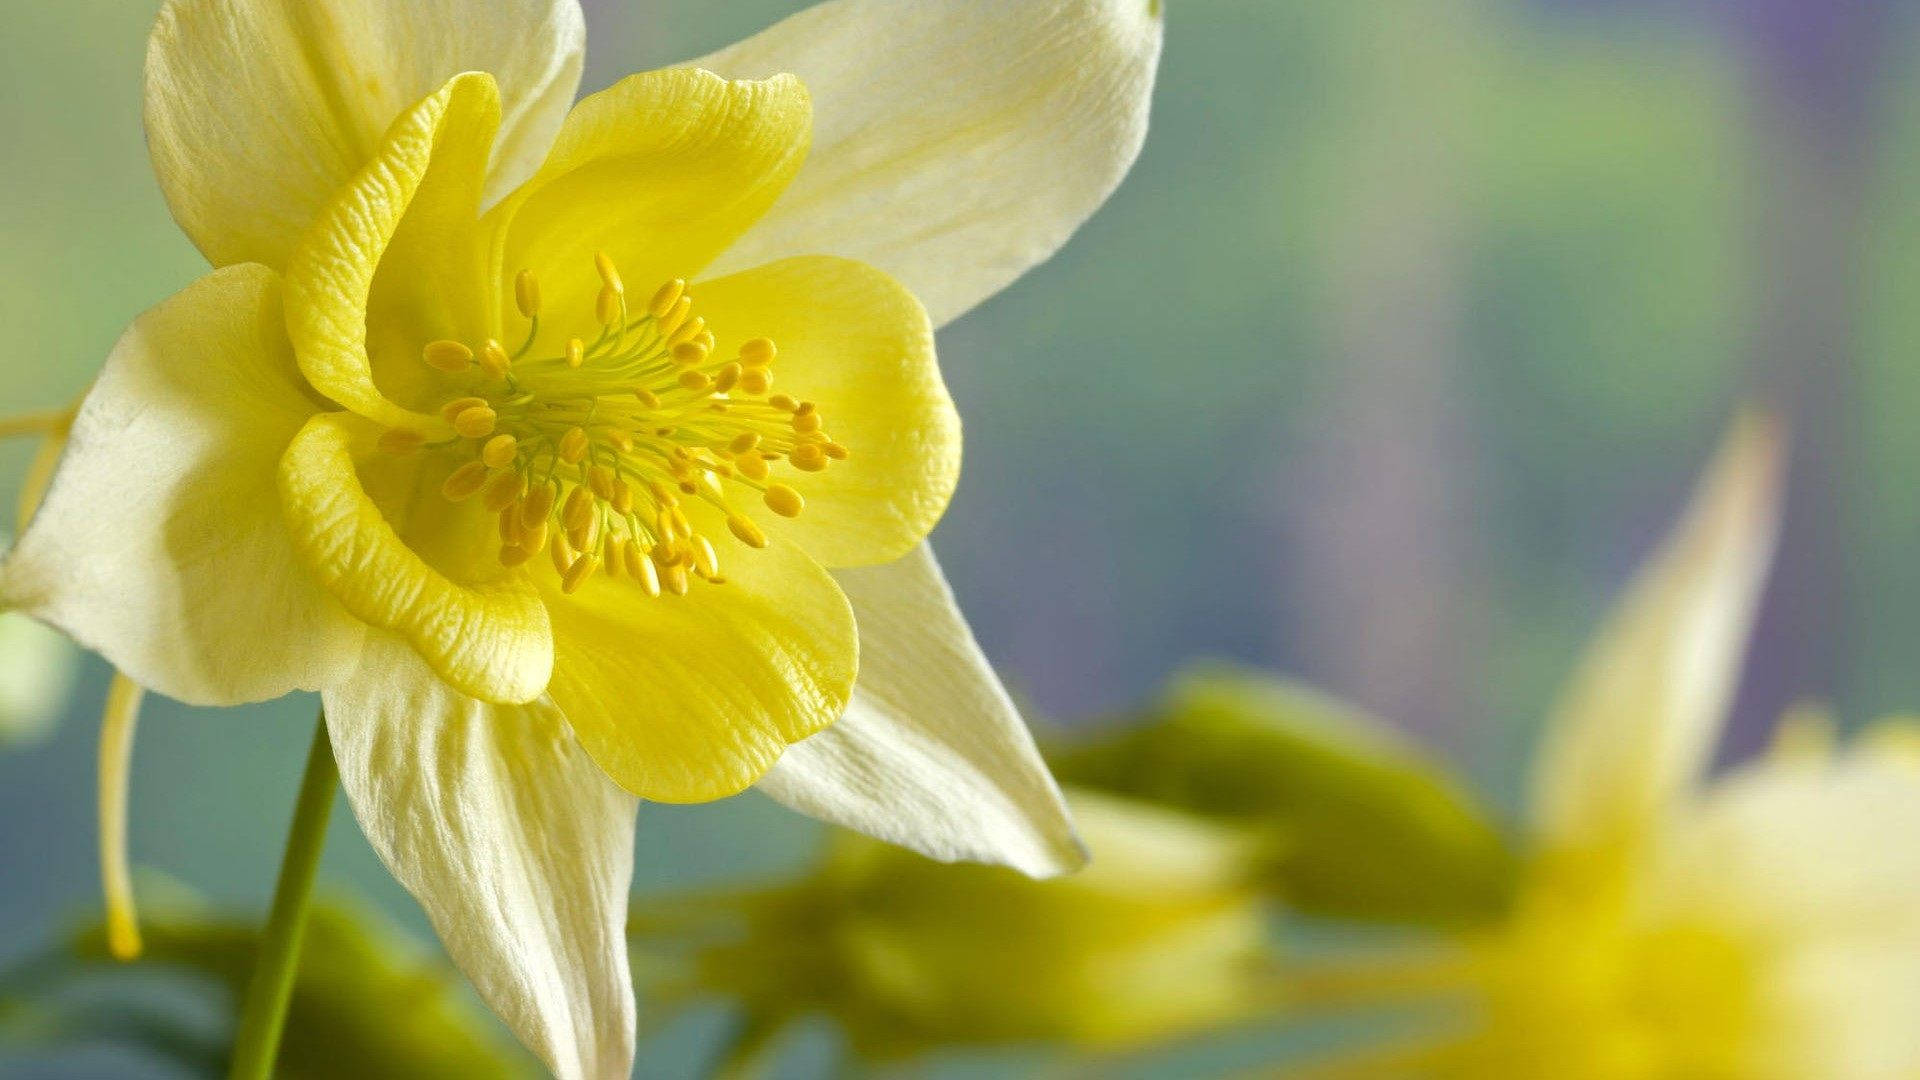 Pretty Daffodils Focus Blurred